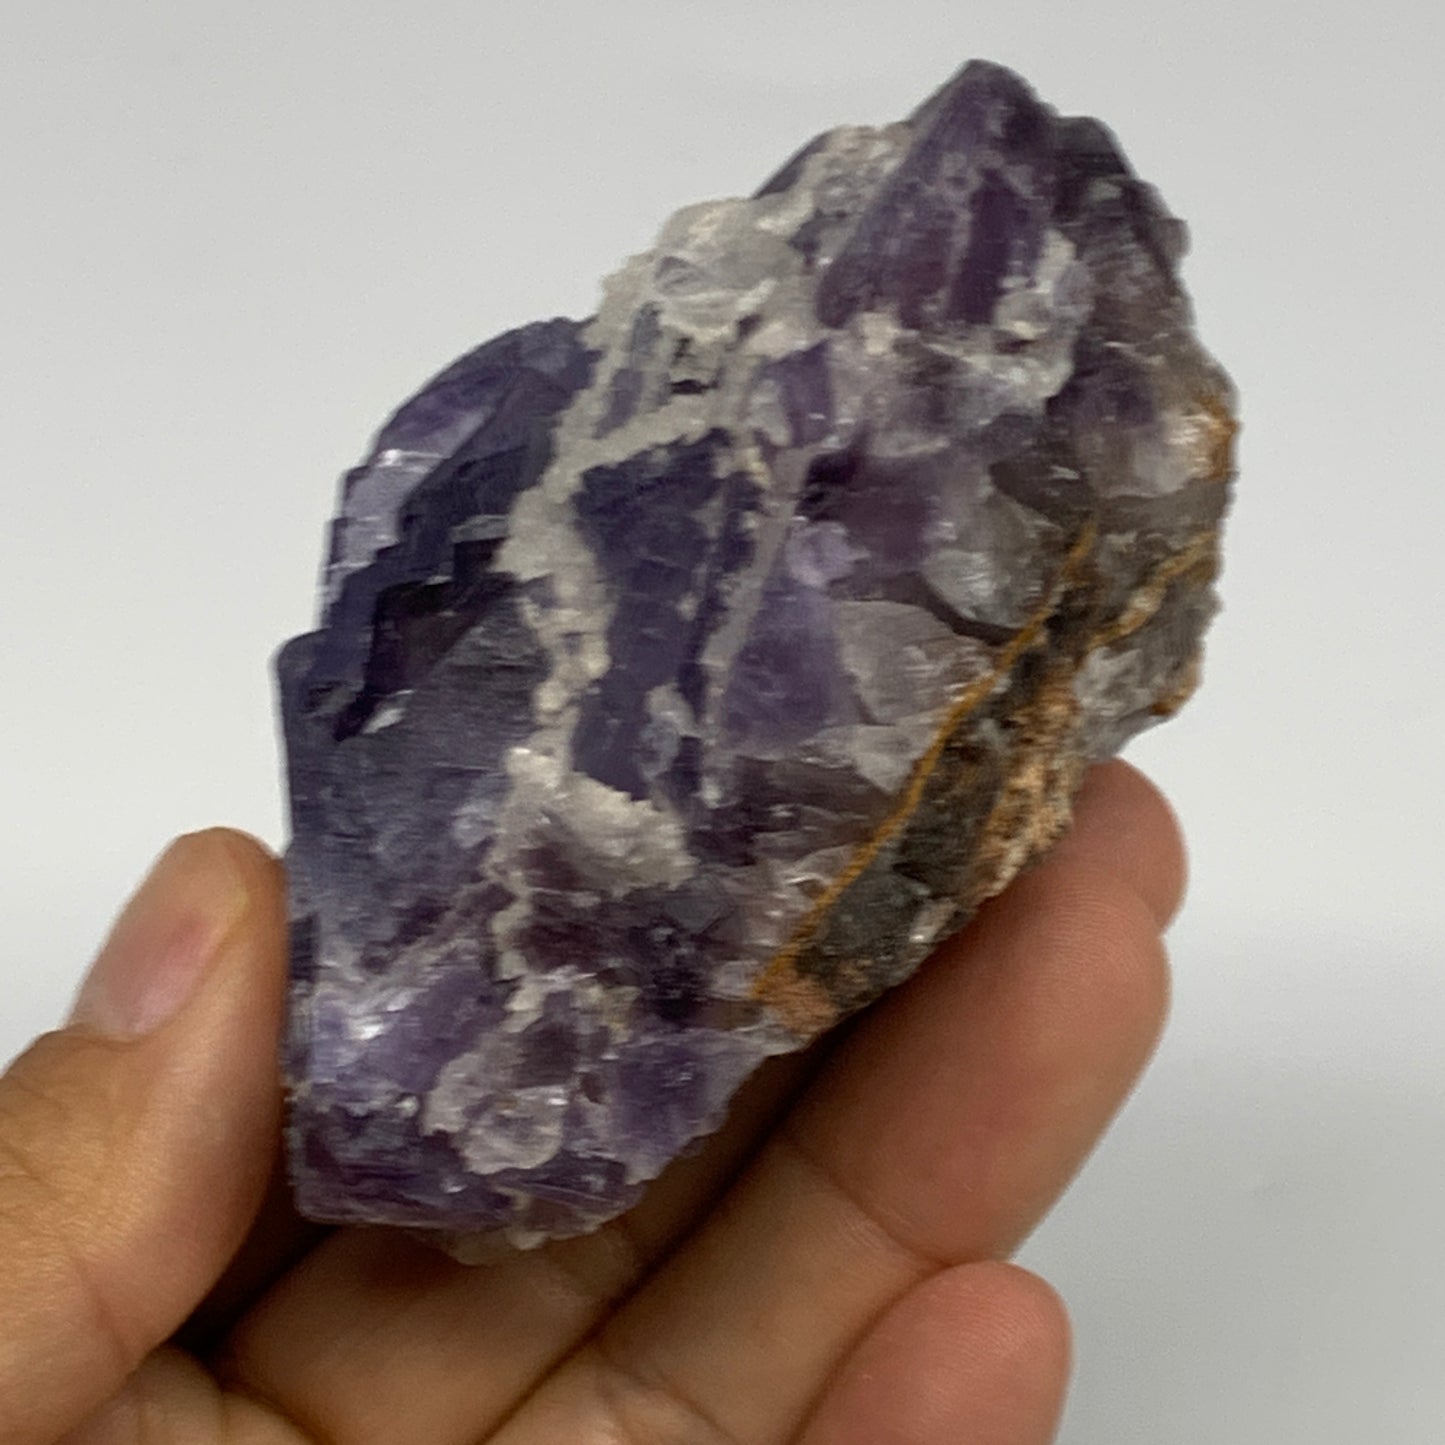 244.3g, 2.7"x2.4"x1.5", Purple Fluorite Crystal Mineral Specimen @Pakistan, B273